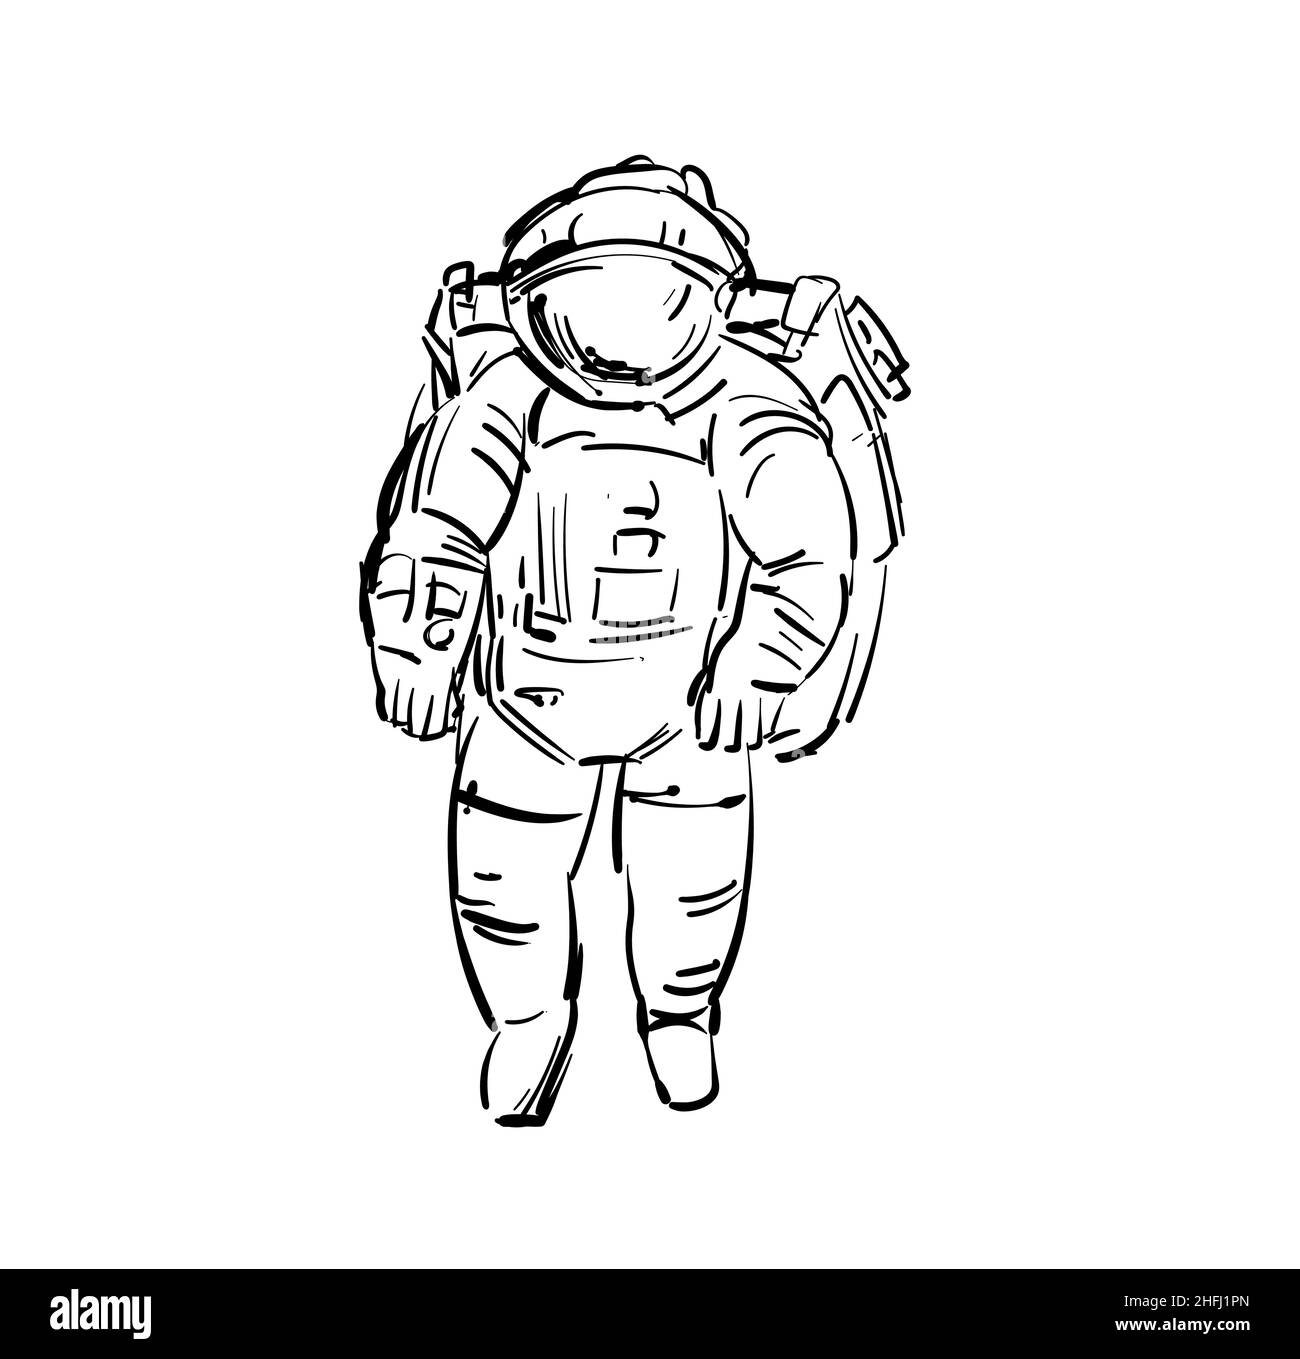 Astronaut cosmonaut hand drawing. spaceman Vector illustration Stock Vector